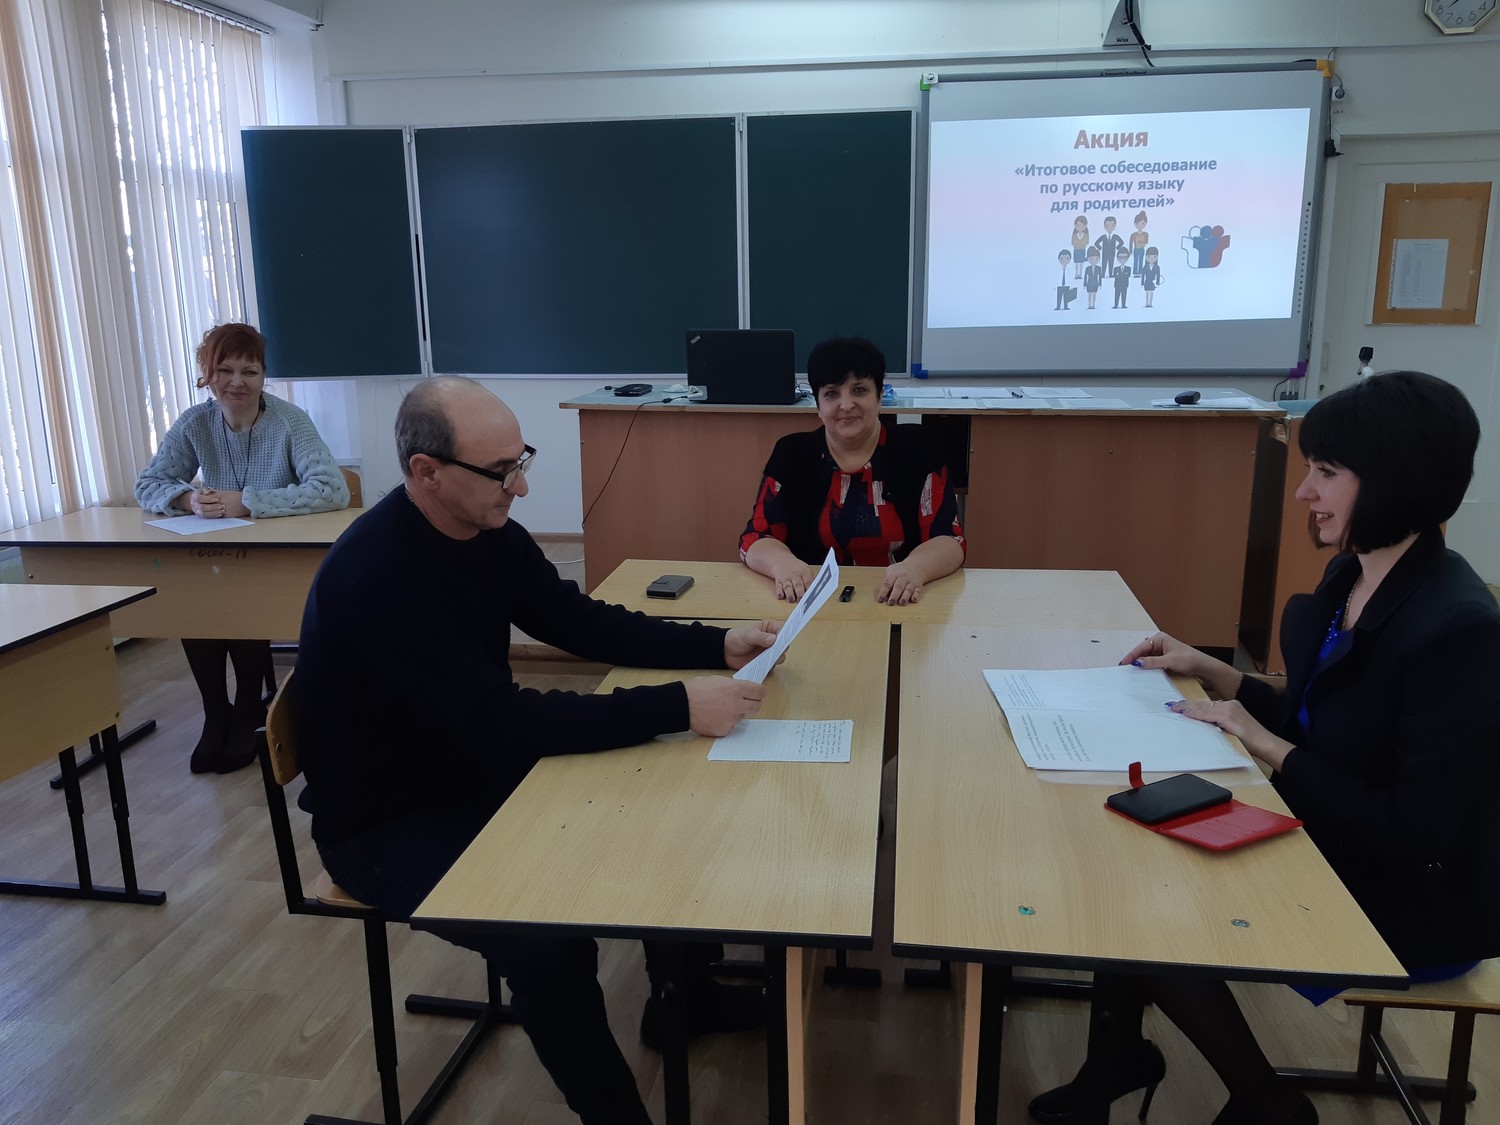 Егораева итоговое собеседование по русскому языку 2021